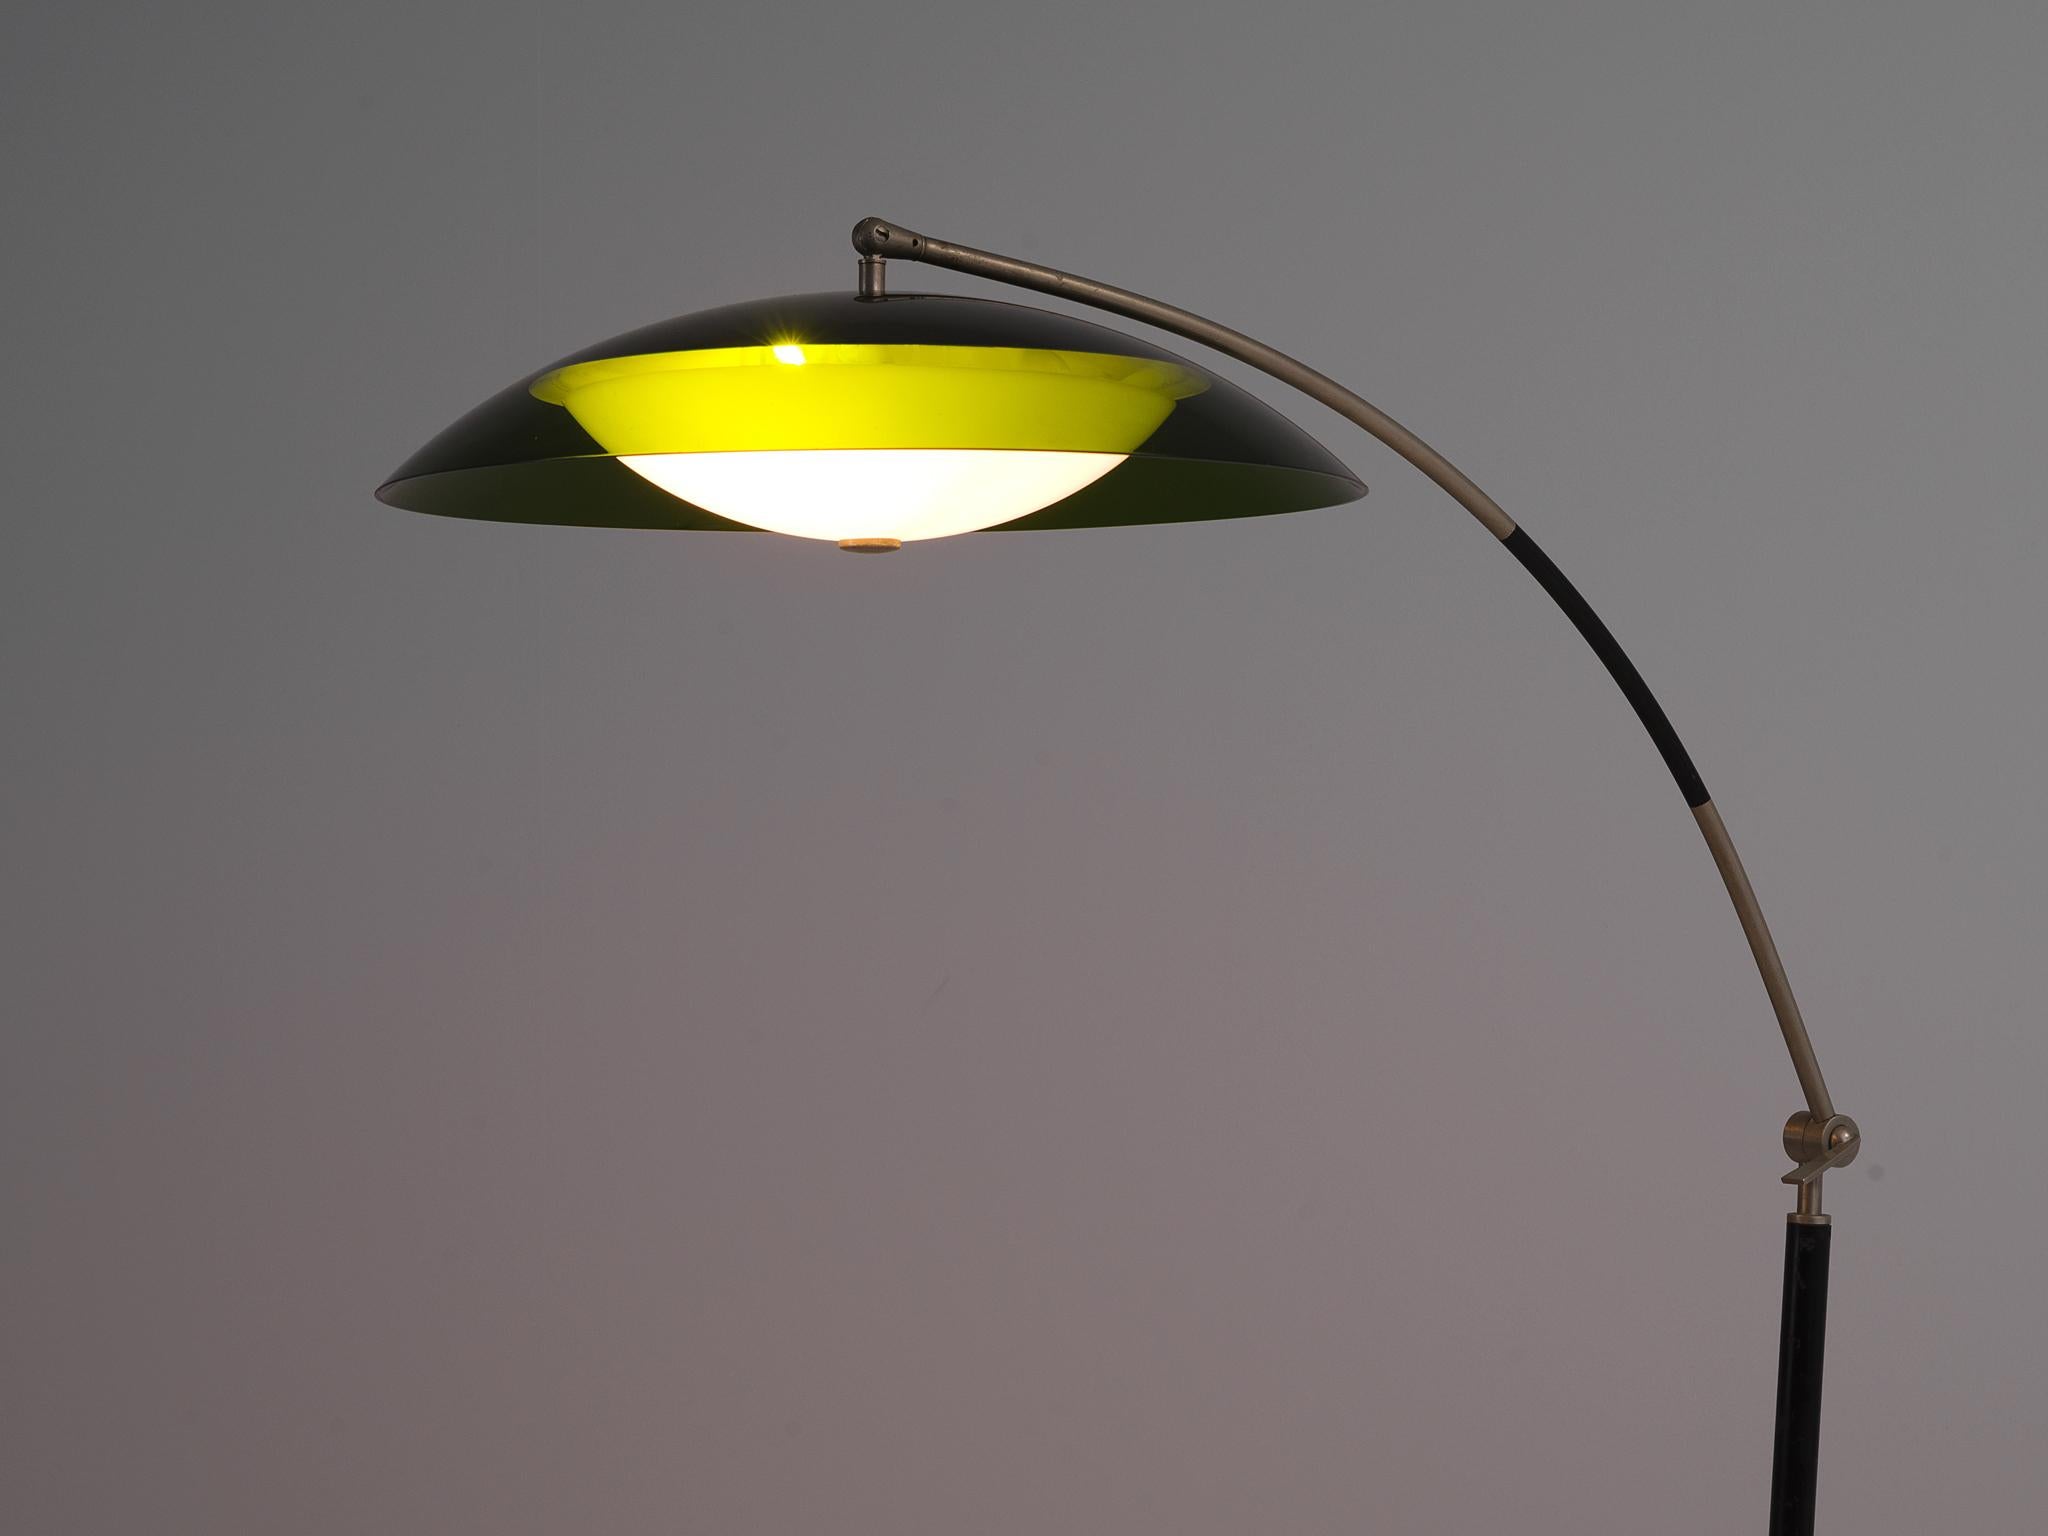 Mid-20th Century Italian Floor Lamp with Adjustable Stem